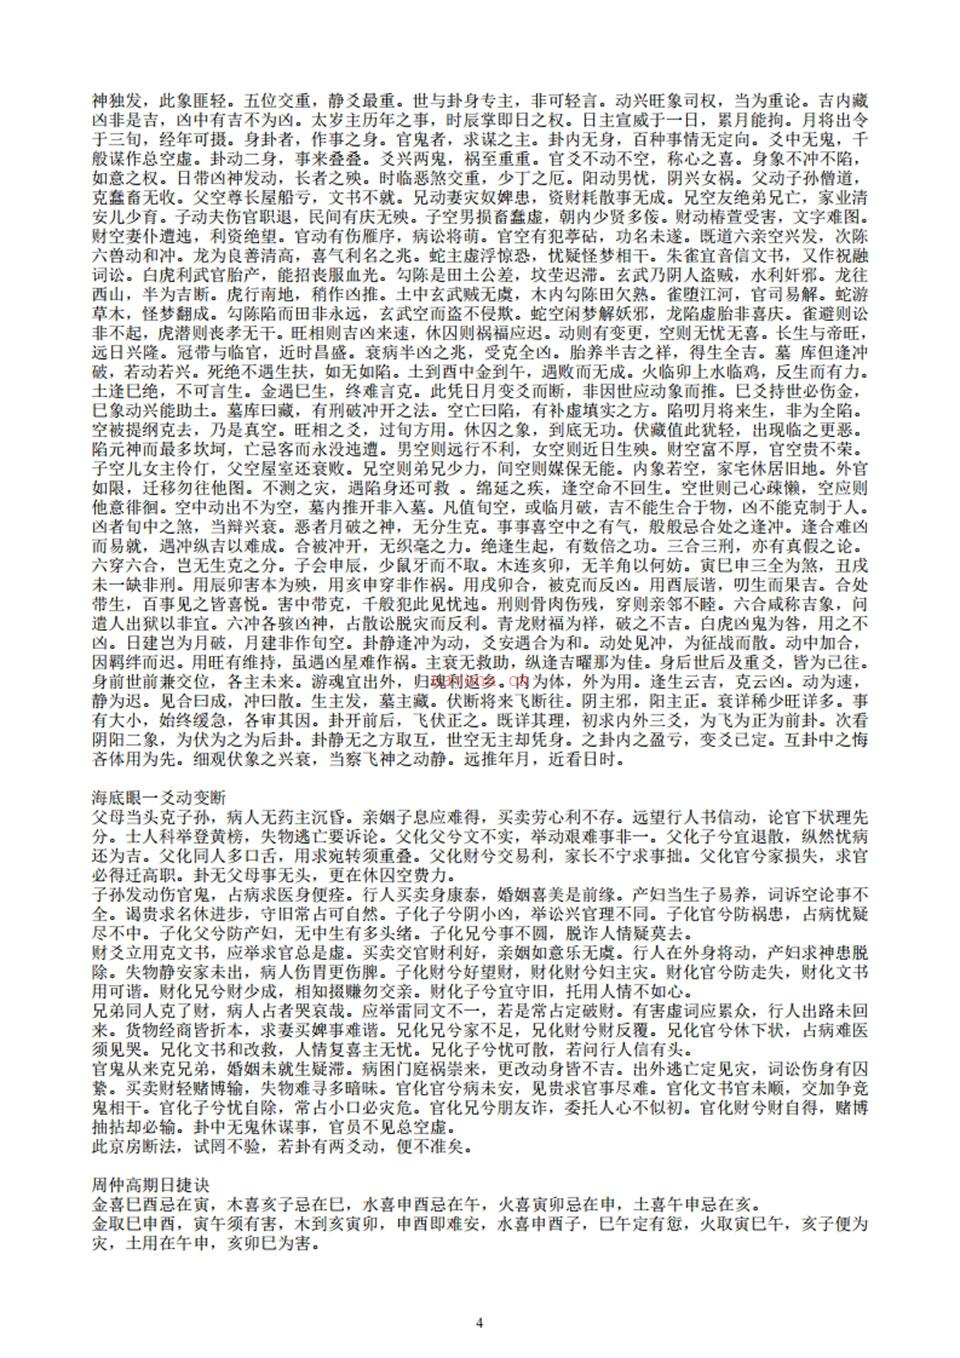 《易隐》 曹九锡着 容易法师整理 子息校点.pdf 百度网盘资源